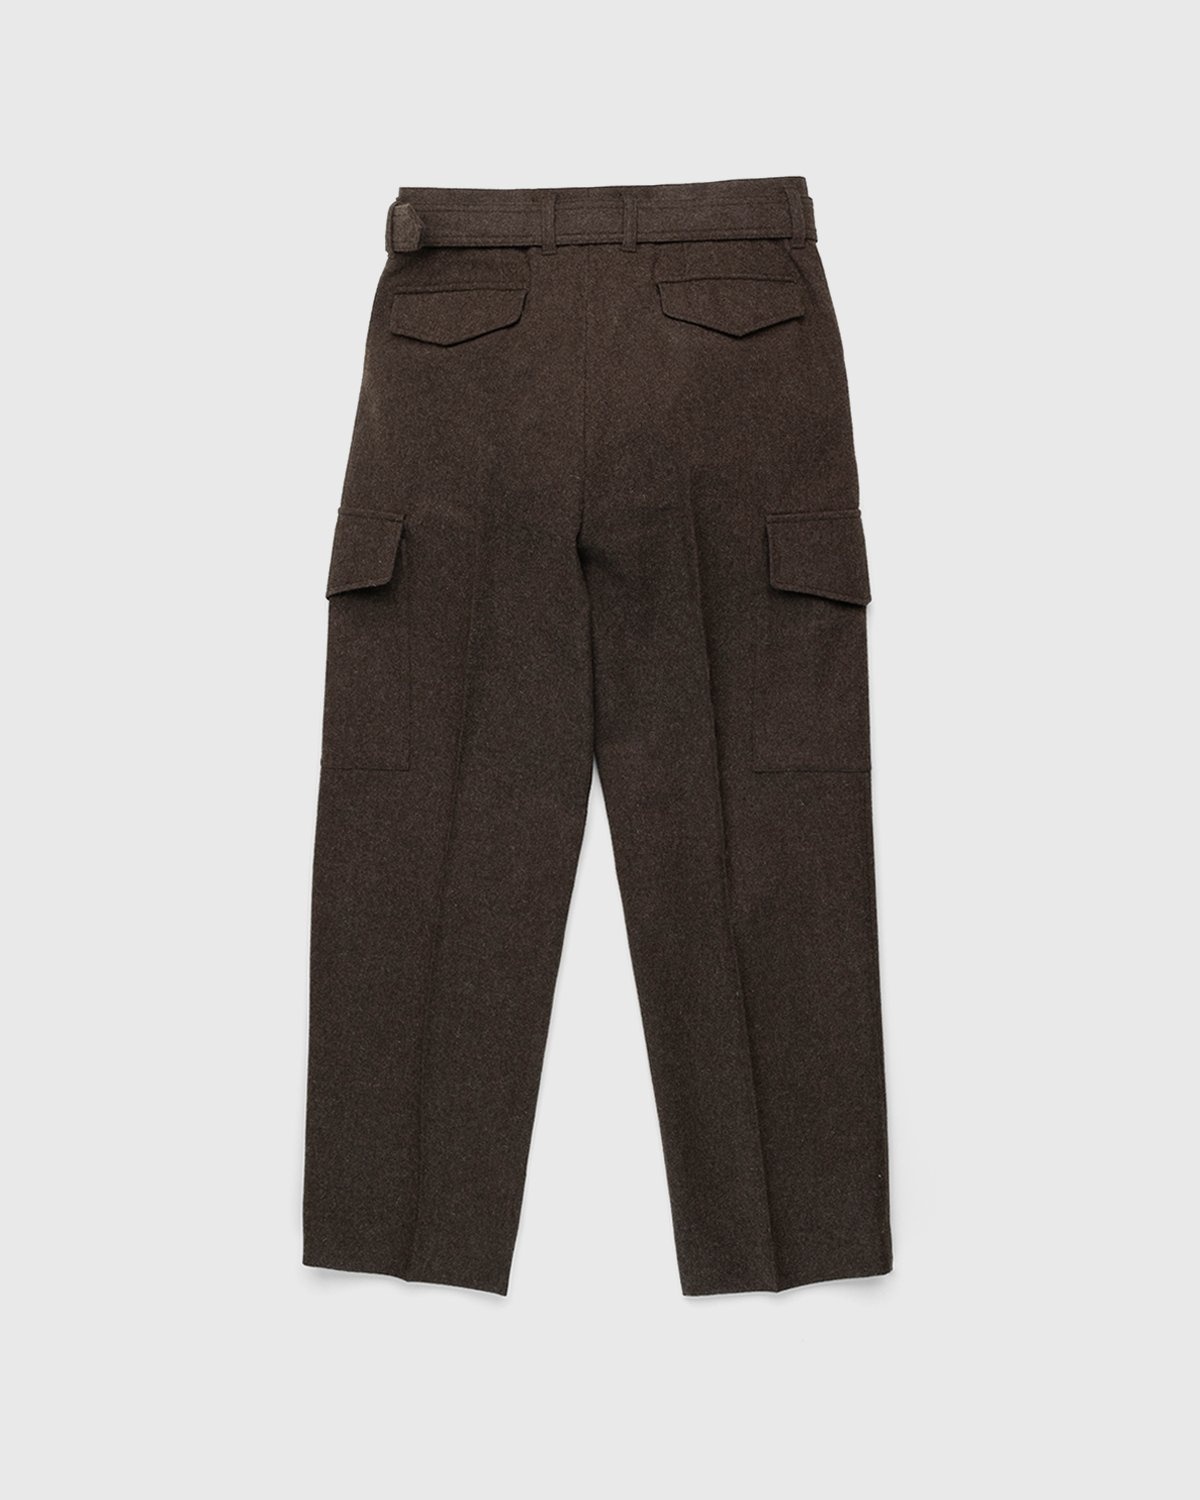 Auralee – High-Waisted Shetland Wool Pants Dark Brown - Cargo Pants - Brown - Image 2